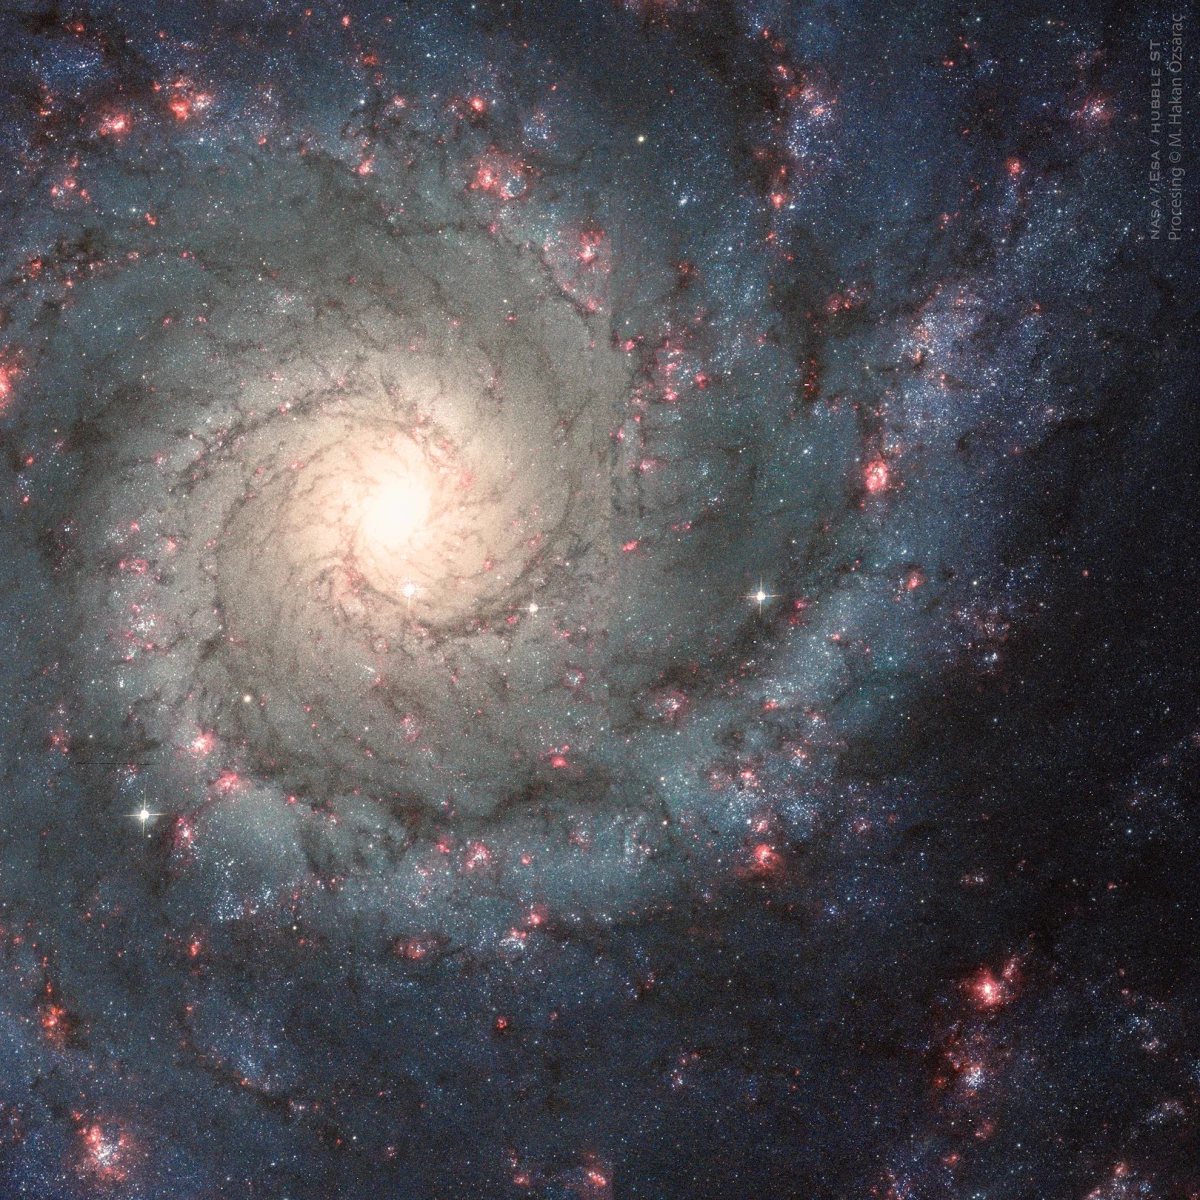 Türk doktorun renklendirdiği astronomi fotoğrafı "NASA" seçkisinde yer aldı